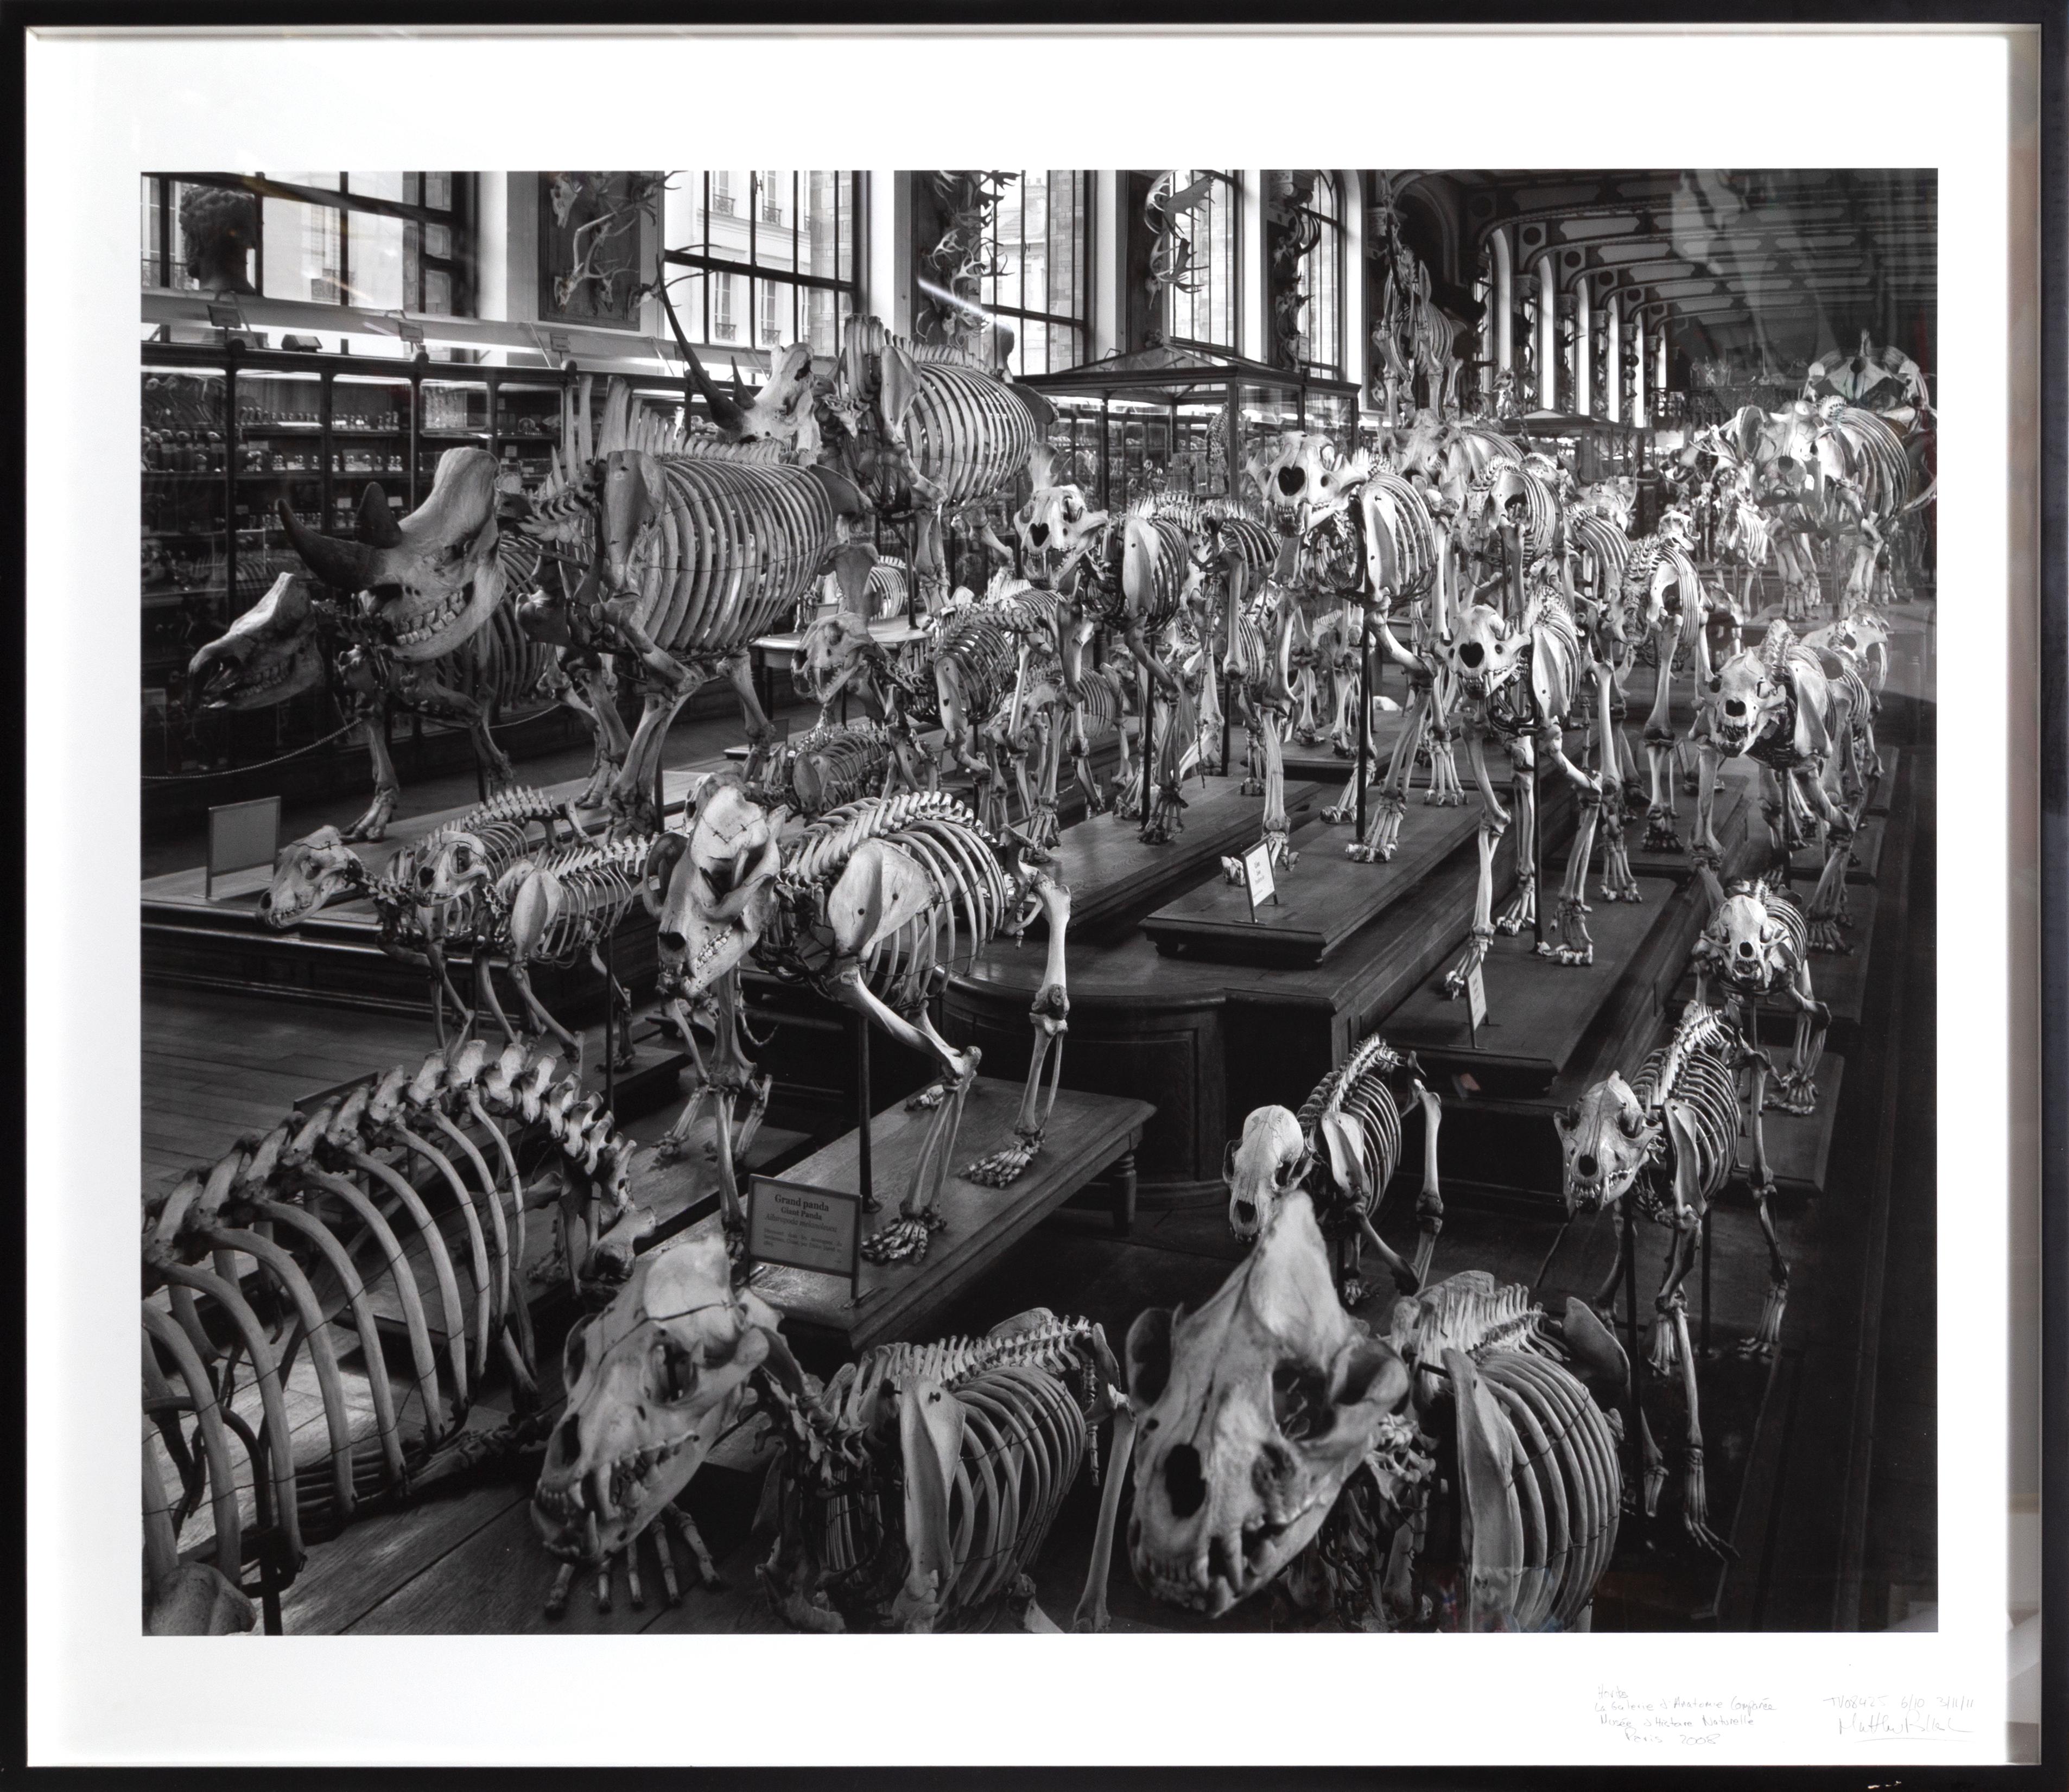 Matthew Pillsbury Black and White Photograph - Hordes, La Galerie d'Anatomie Comparée, Musée d'Histoire Naturelle